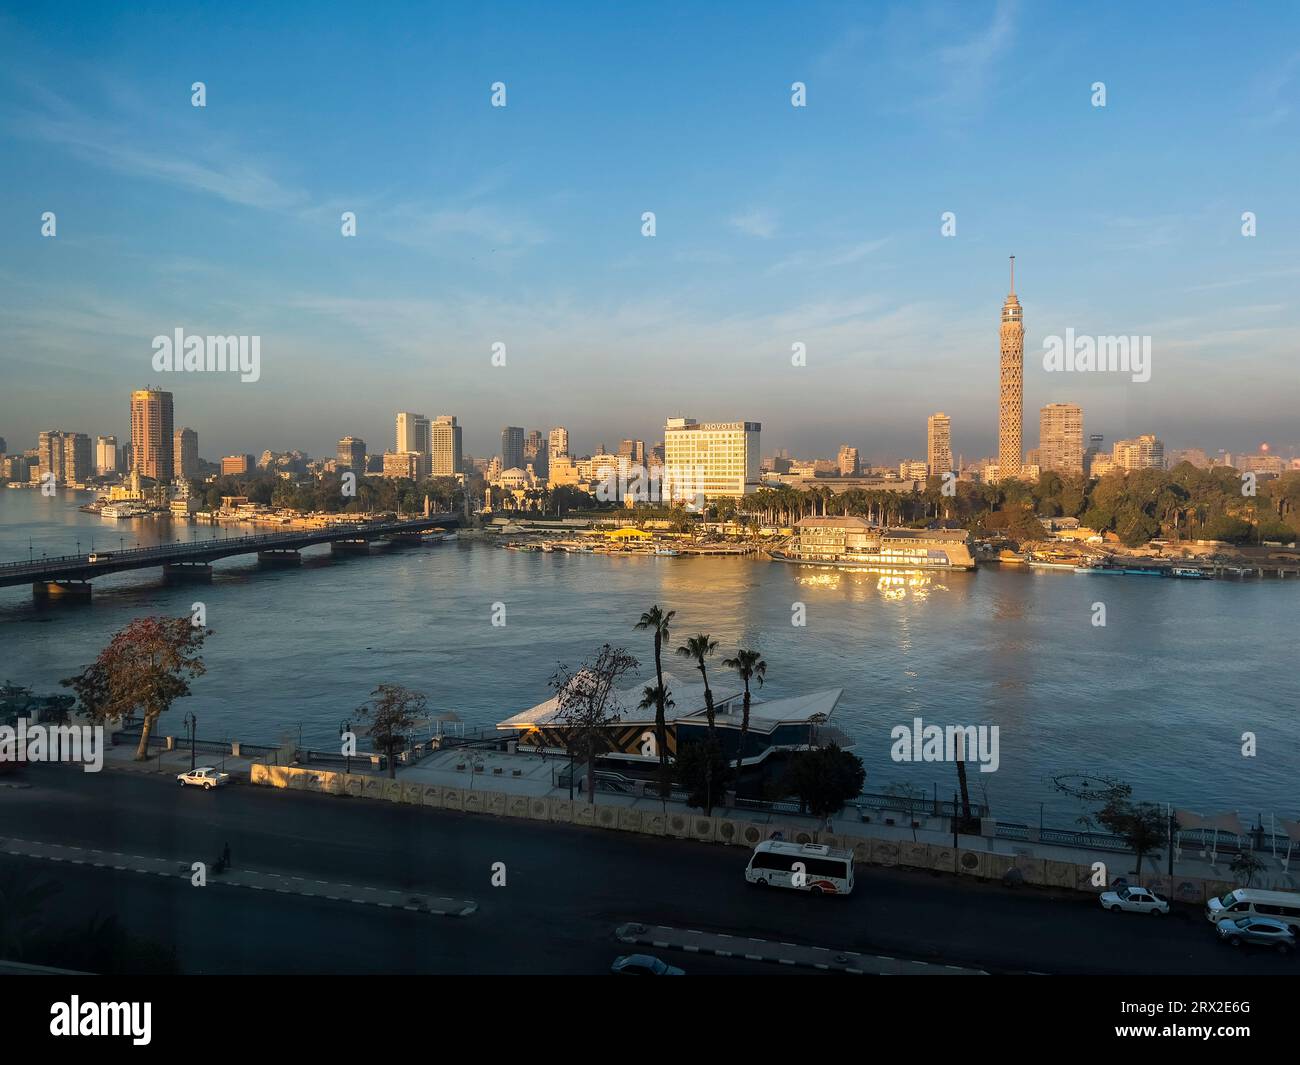 Tour du Caire, la plus haute structure en Egypte et en Afrique du Nord, s'élevant à 187 mètres, fleuve Nil, le Caire, Egypte, Afrique du Nord, Afrique Banque D'Images